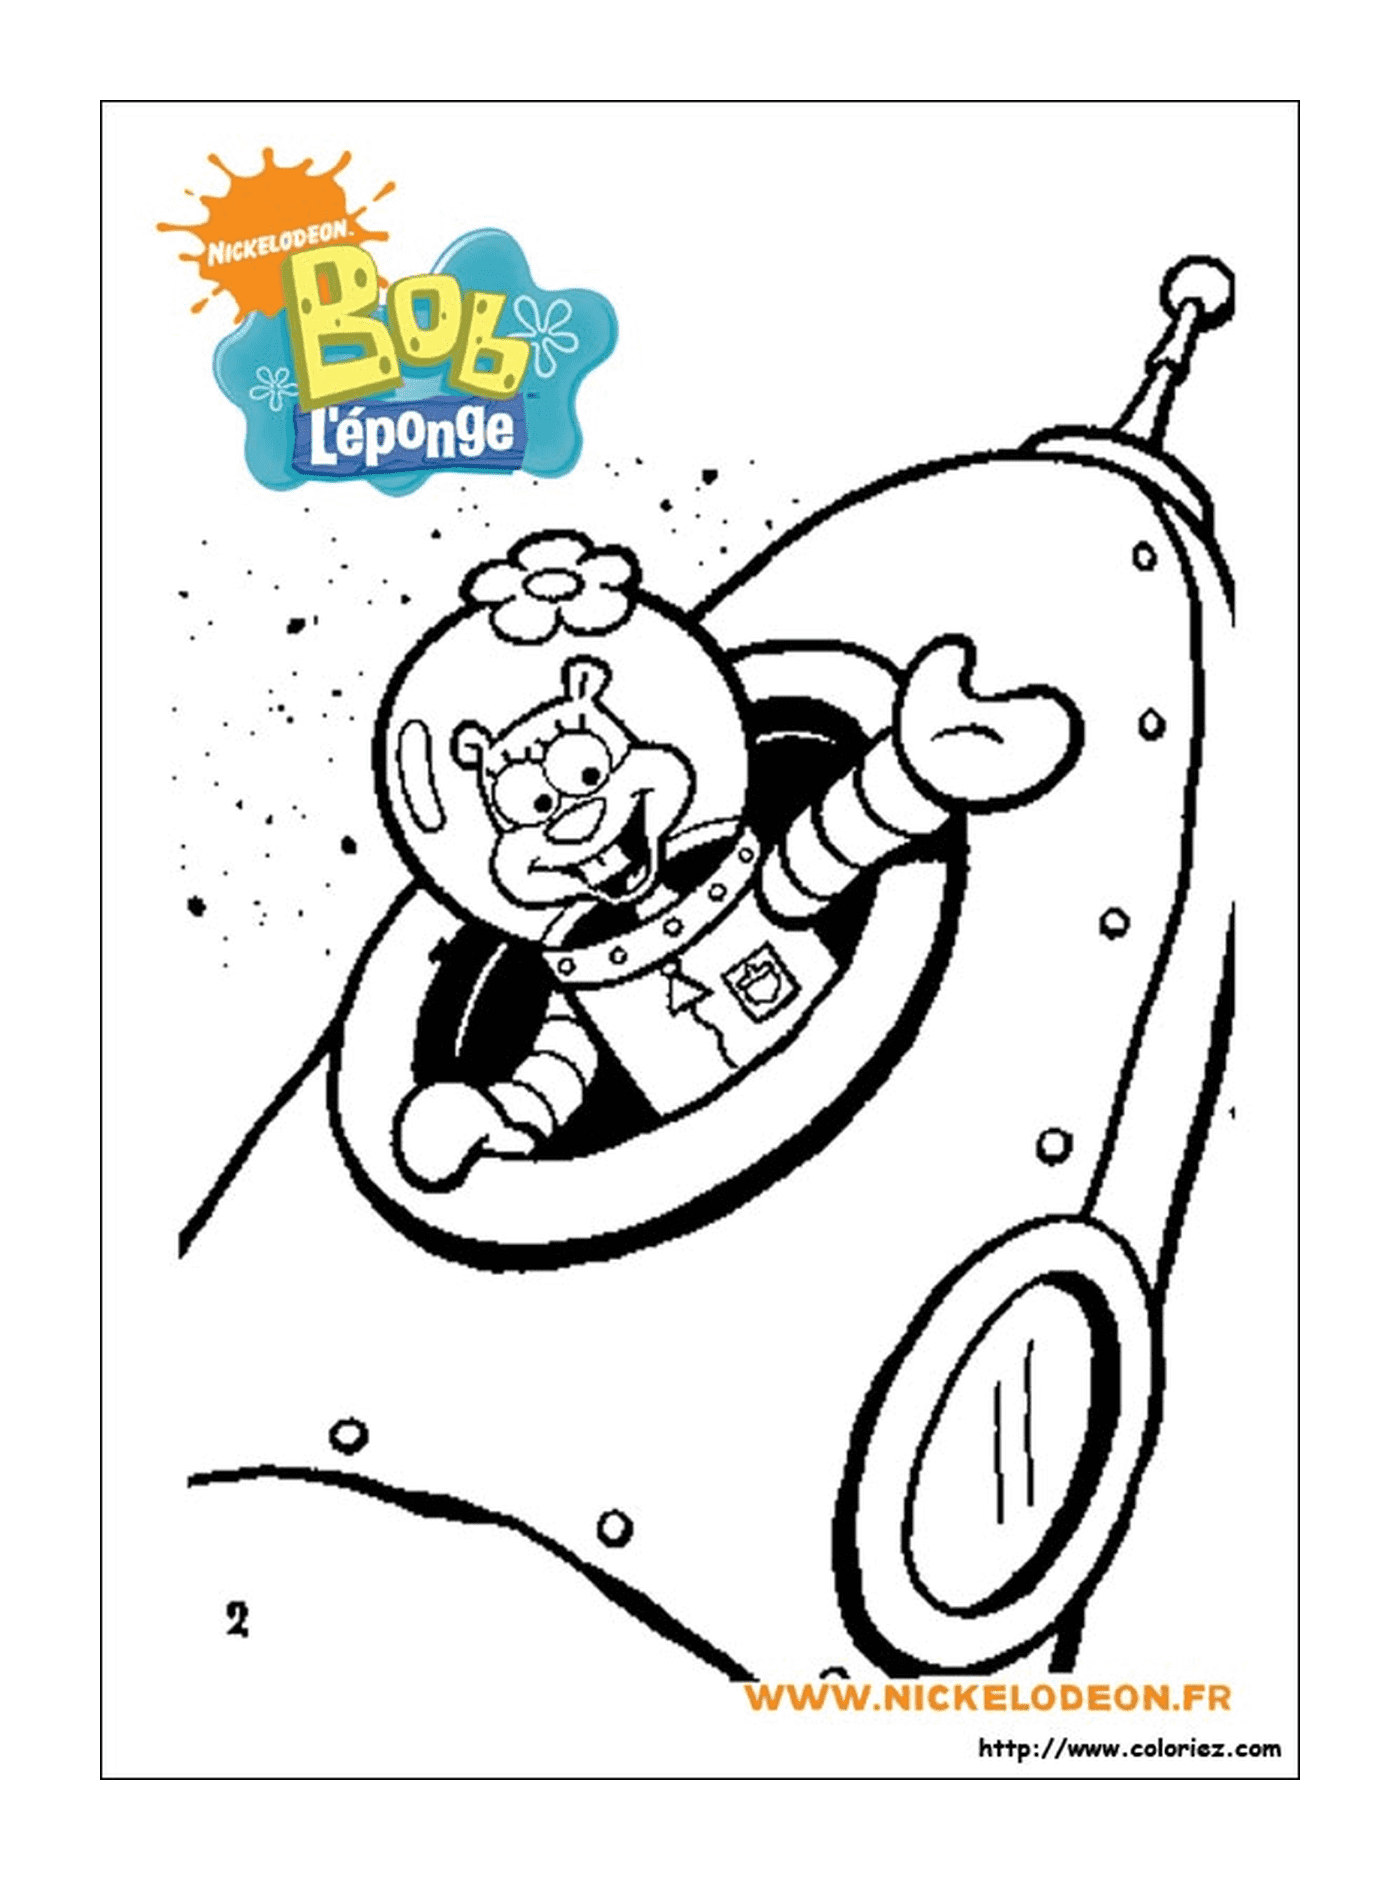  Bob Esponja, un personaje de dibujos animados, vestido de astronauta 